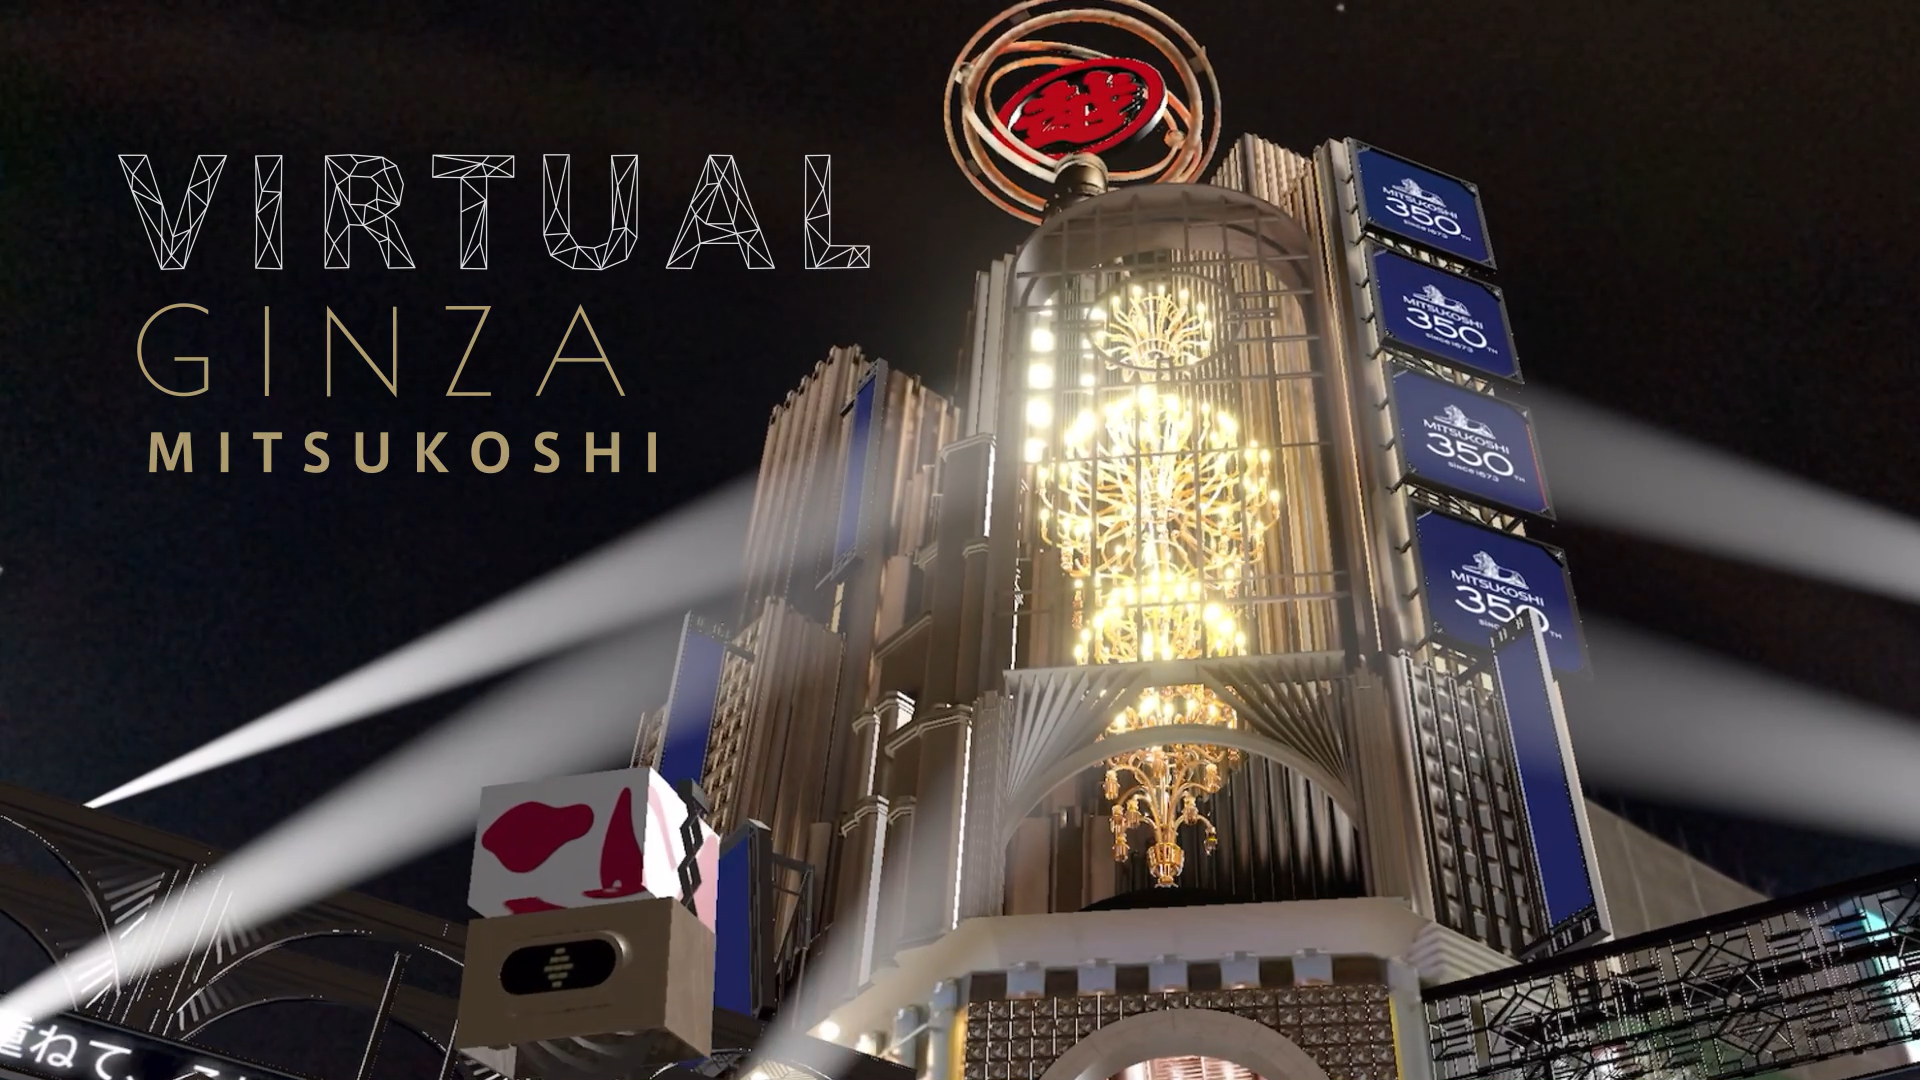 三越銀座店、スタジオアルタ、SoVeCと4社共同で開発した「GINZA XR Media」から 新たな広告メニューとして「Virtual GINZA mitsukoshi」をリリース